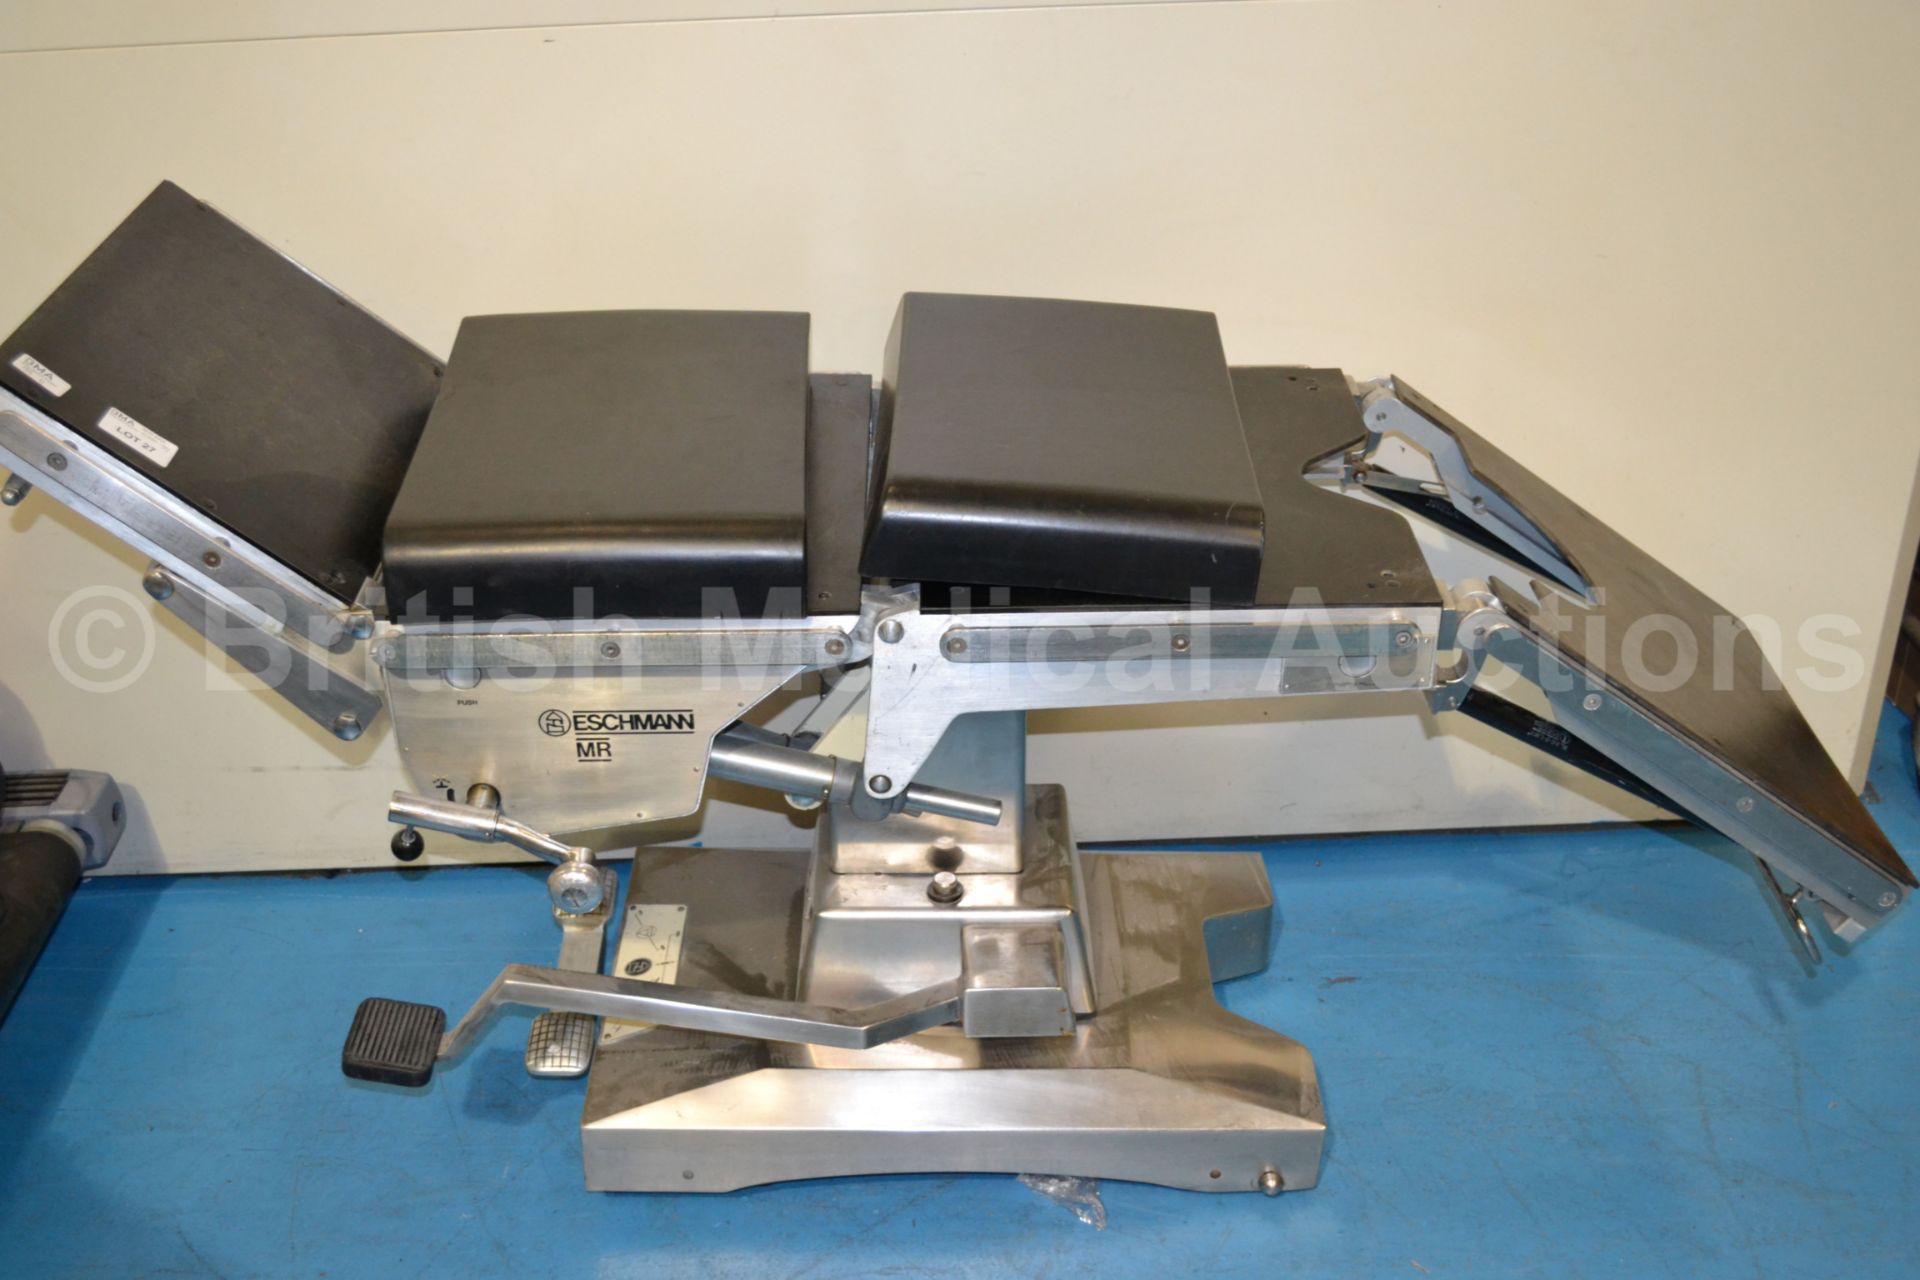 Eschmann MR Hydraulic Operating Table - Hydraulics - Image 2 of 3